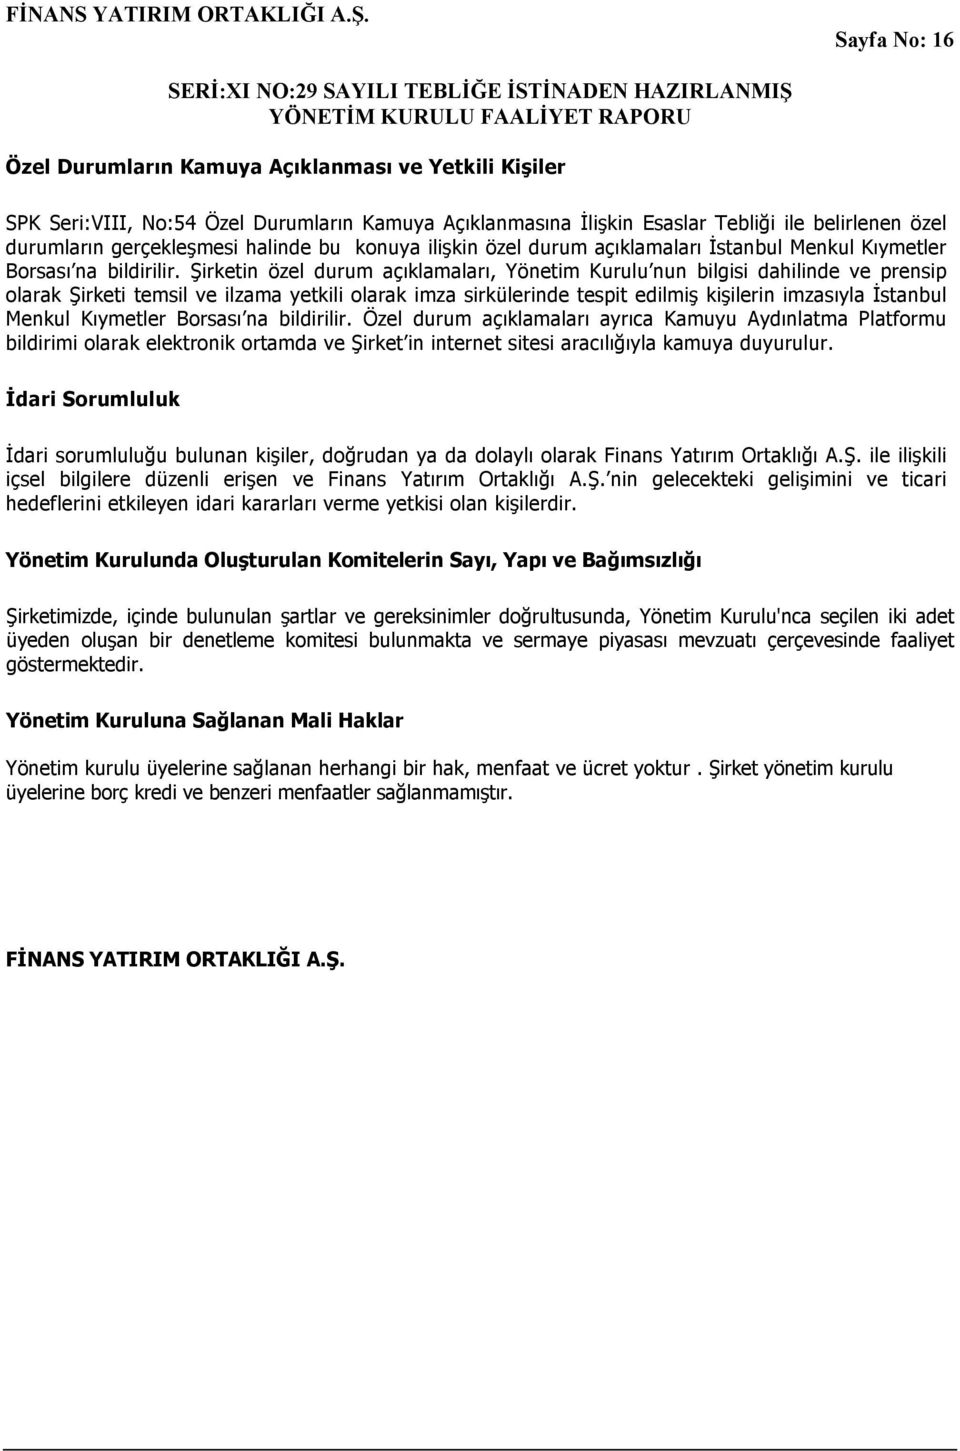 Şirketin özel durum açıklamaları, Yönetim Kurulu nun bilgisi dahilinde ve prensip olarak Şirketi temsil ve ilzama yetkili olarak imza sirkülerinde tespit edilmiş kişilerin imzasıyla İstanbul Menkul